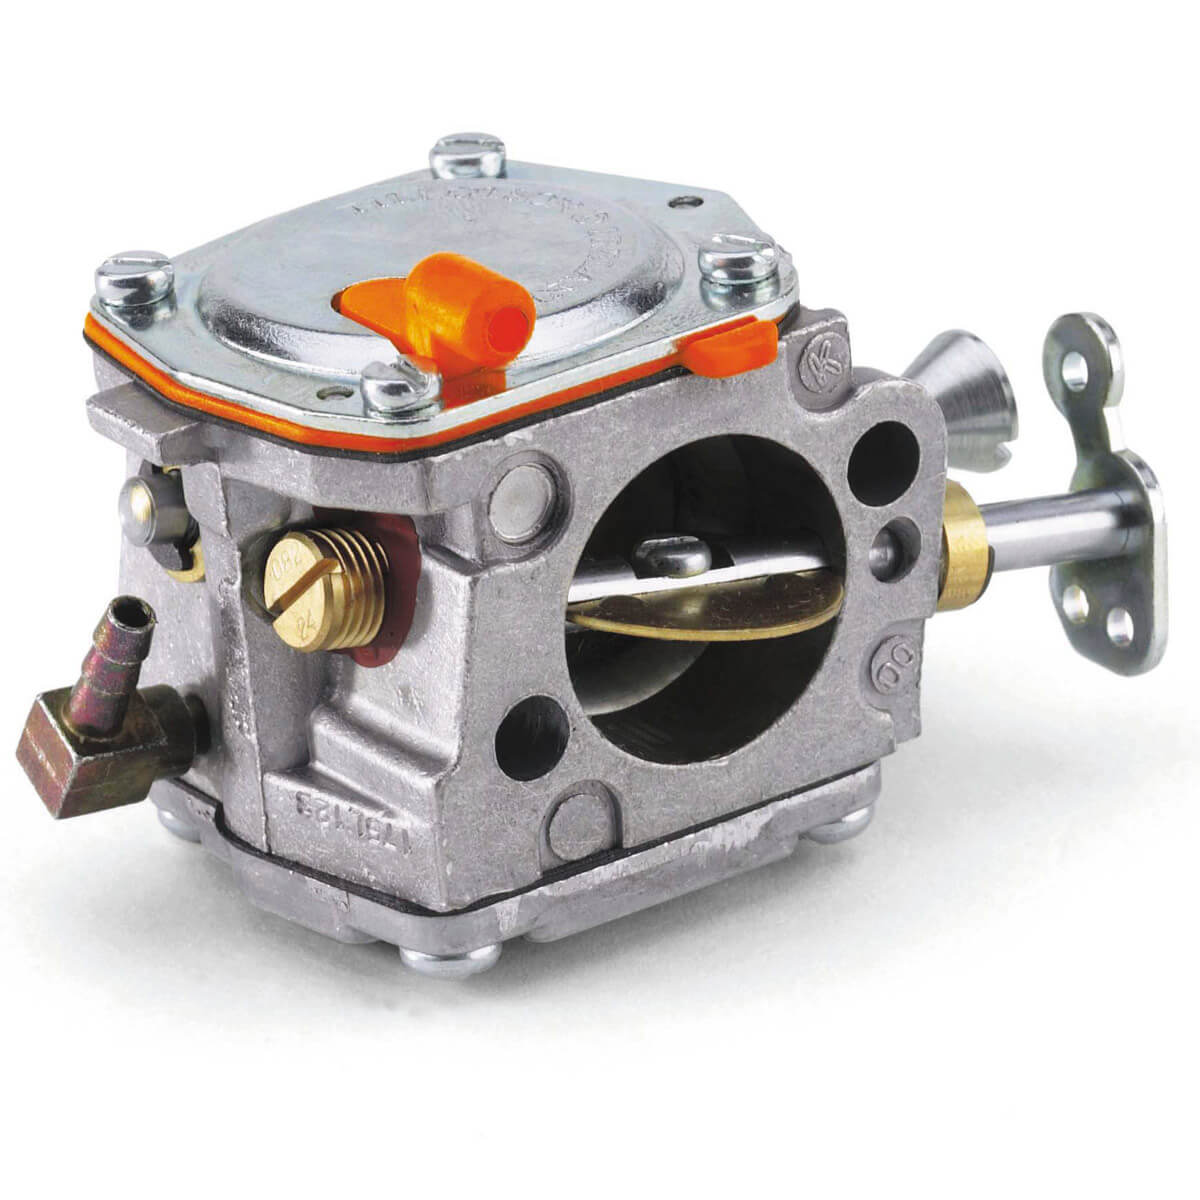 Carburetor for Partner Husqvarna K650 K700 K800 K1200 Concrete Saw 503-280-418 